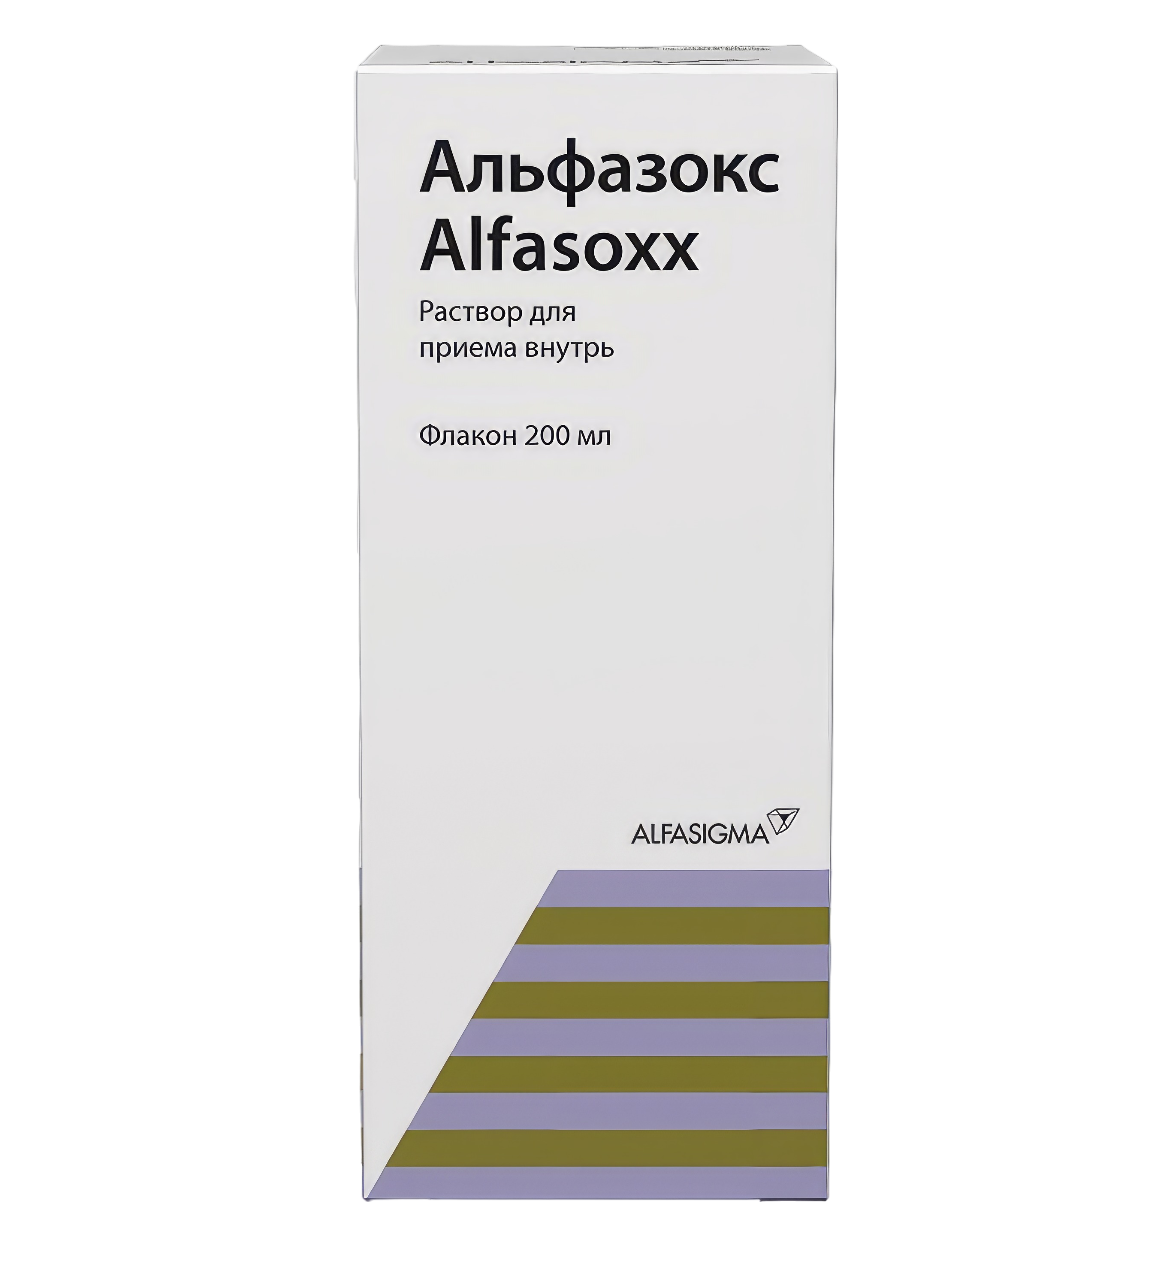 Альфазокс, раствор для приема внутрь флакон 200 мл бактериофаг клебсиелл поливалентный очищенный раствор для приема внутрь местно и наружно 20мл 4шт